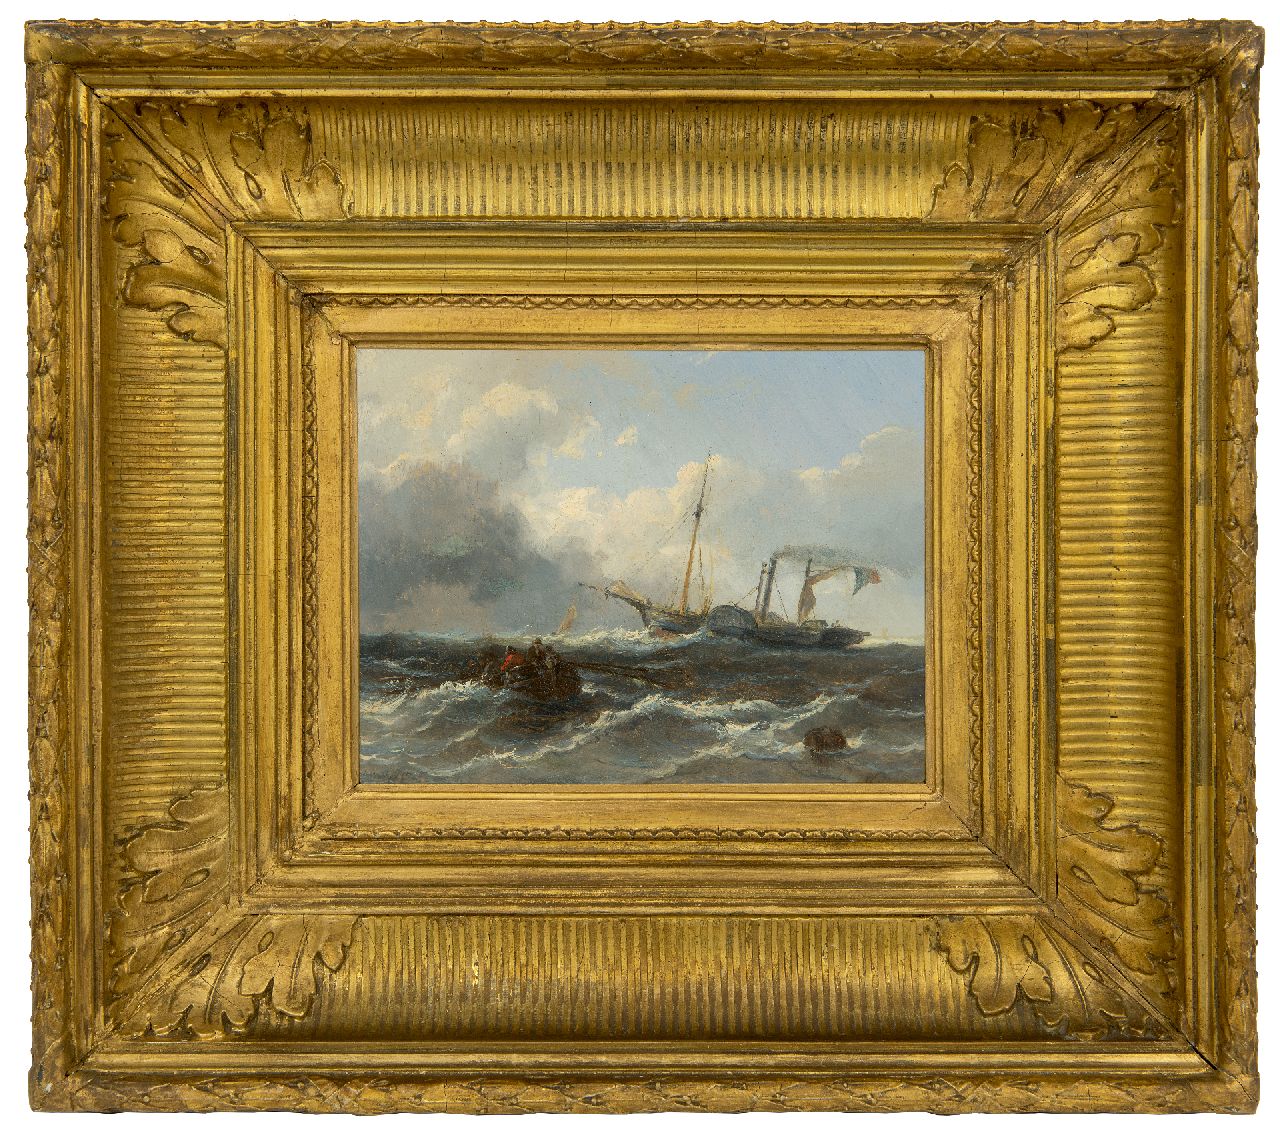 Meijer J.H.L.  | Johan Hendrik 'Louis' Meijer | Schilderijen te koop aangeboden | Roeiboot en stoomschip op zee, olieverf op paneel 14,9 x 19,0 cm, gesigneerd rechtsonder